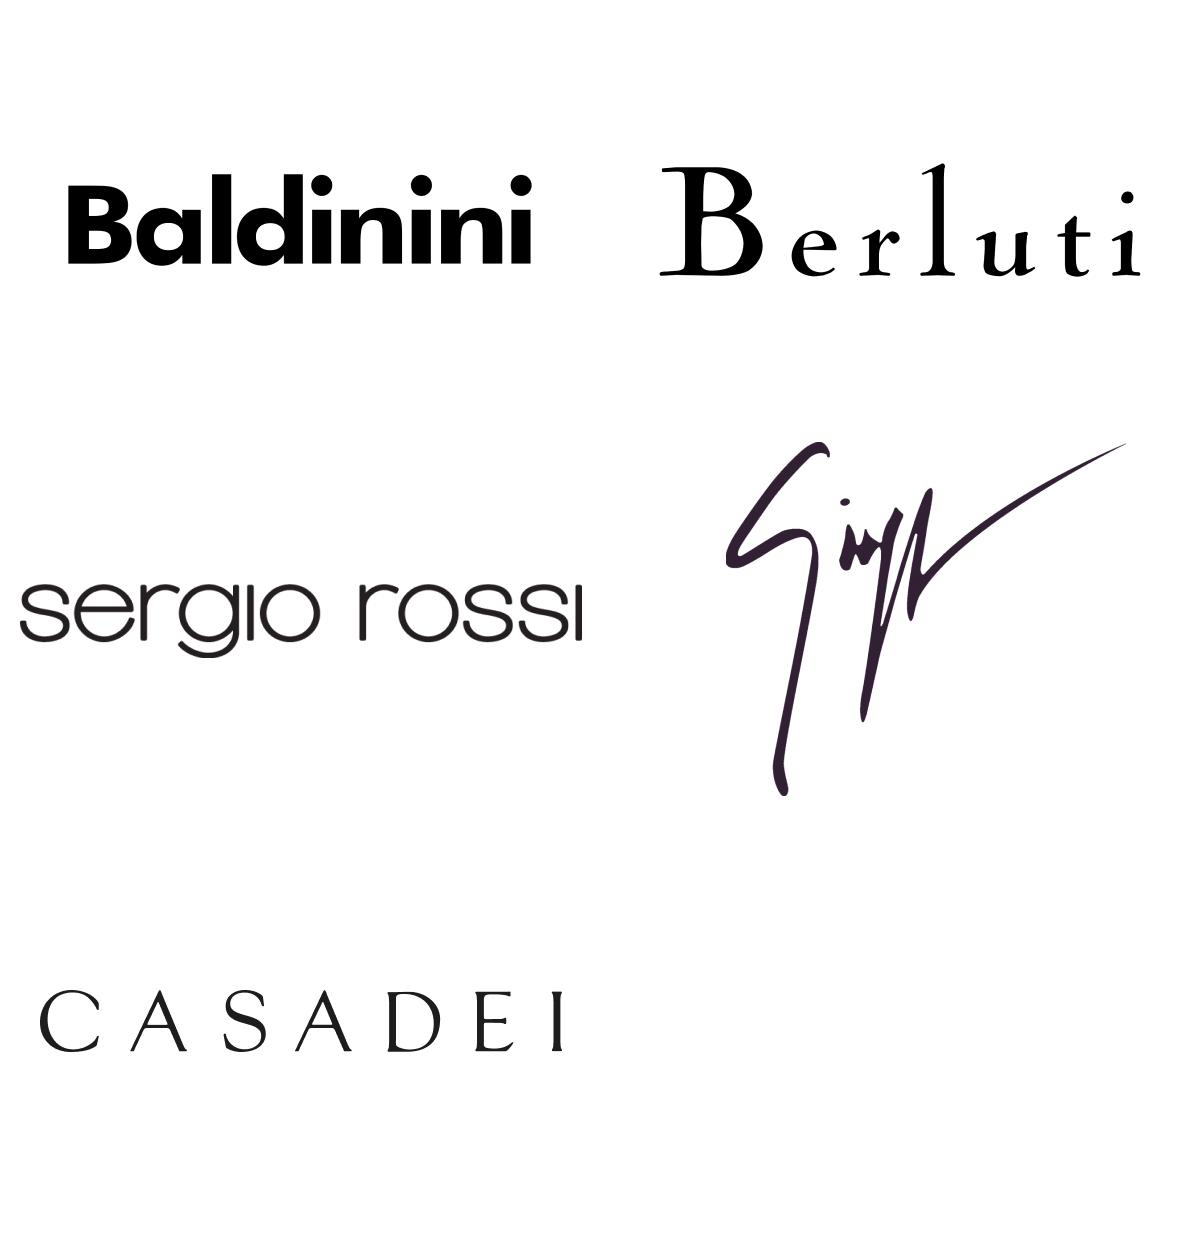 Loghi top brand colonna 2: Baldinini, Berluti, Sergio Rossi, Casadei, Giuseppe Zanotti.